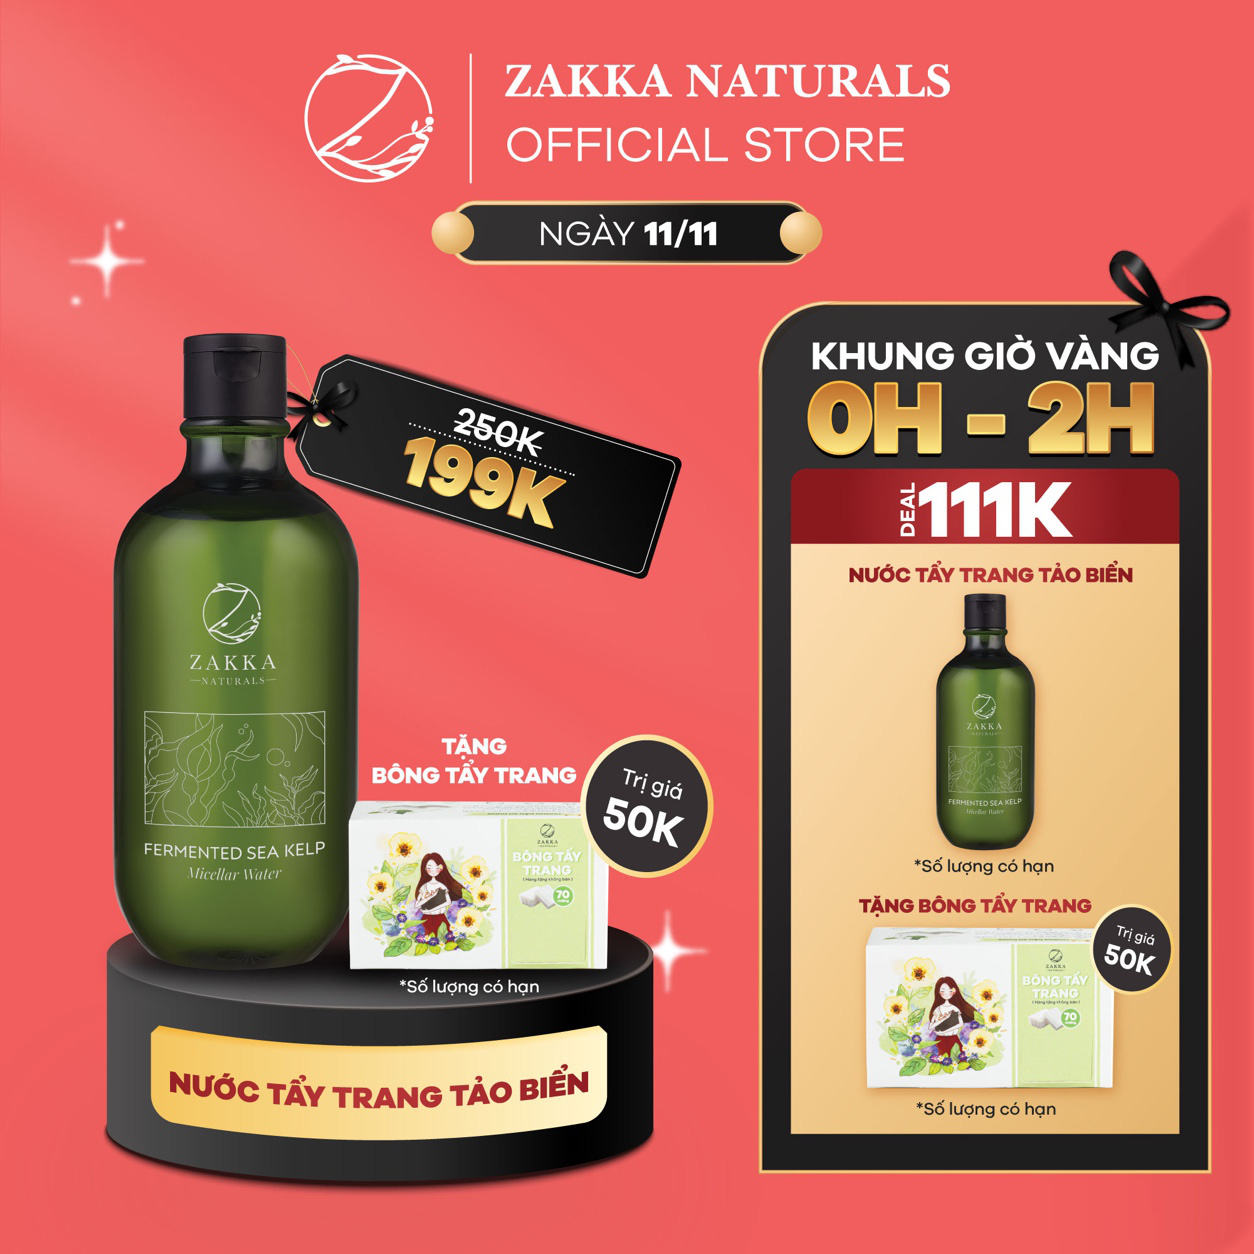 Mỹ phẩm xịn nhà local brand nổi tiếng Zakka Naturals quyết “sập sàn” từ 0-2h ngày 11/11, có gì hot? - Ảnh 1.